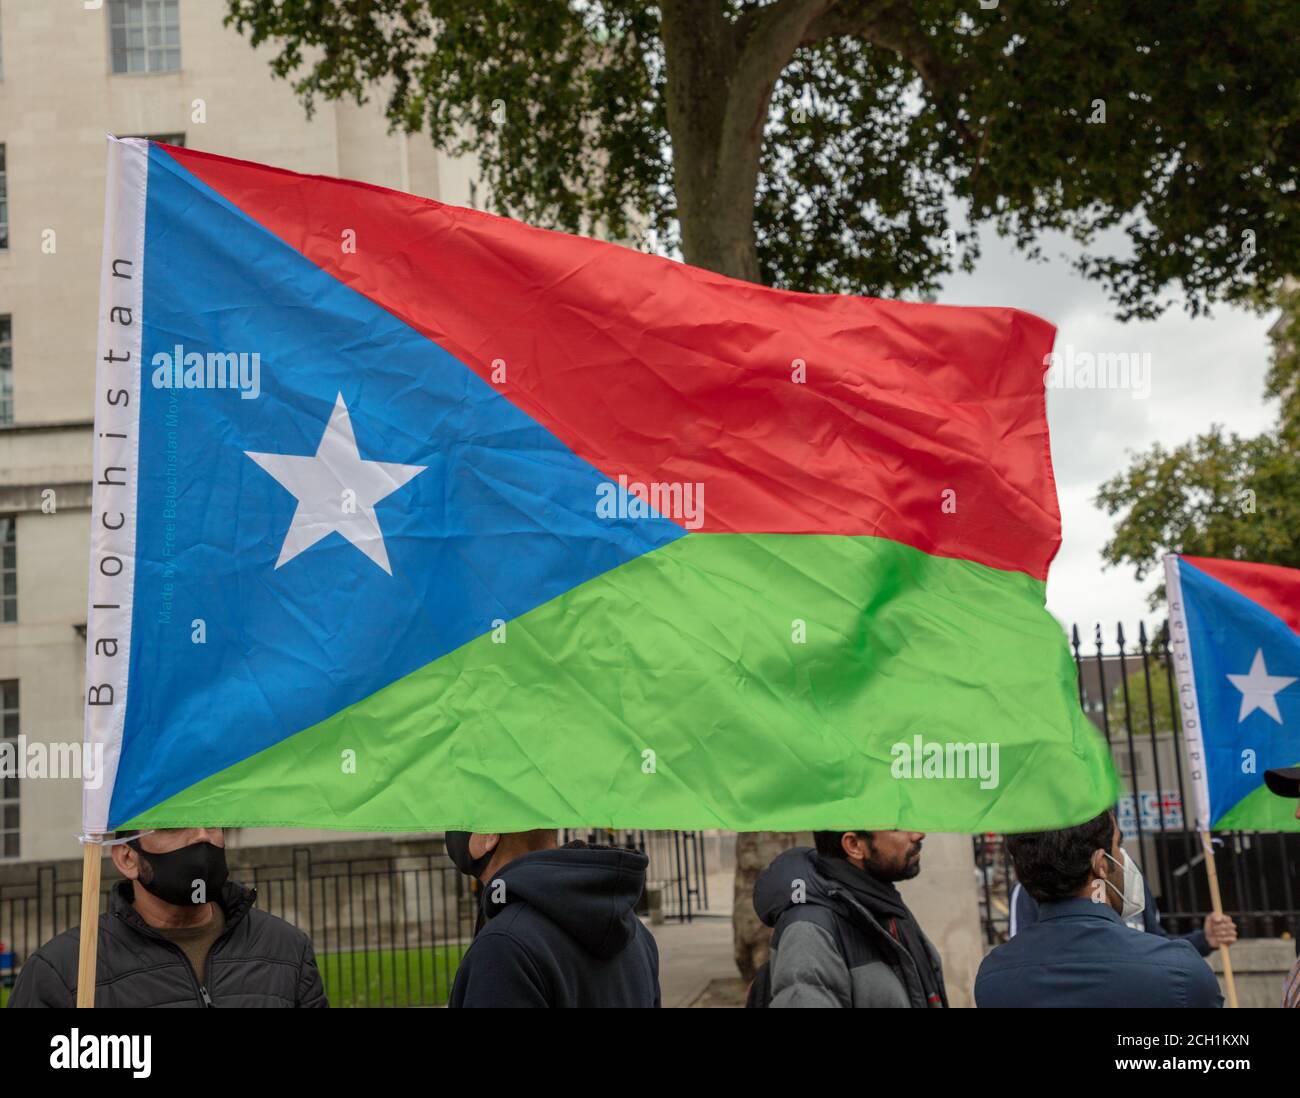 Drapeau représentant le Baloutchistan, voir porté par des manifestants en face du numéro 10 Downing Street, Londres. Banque D'Images